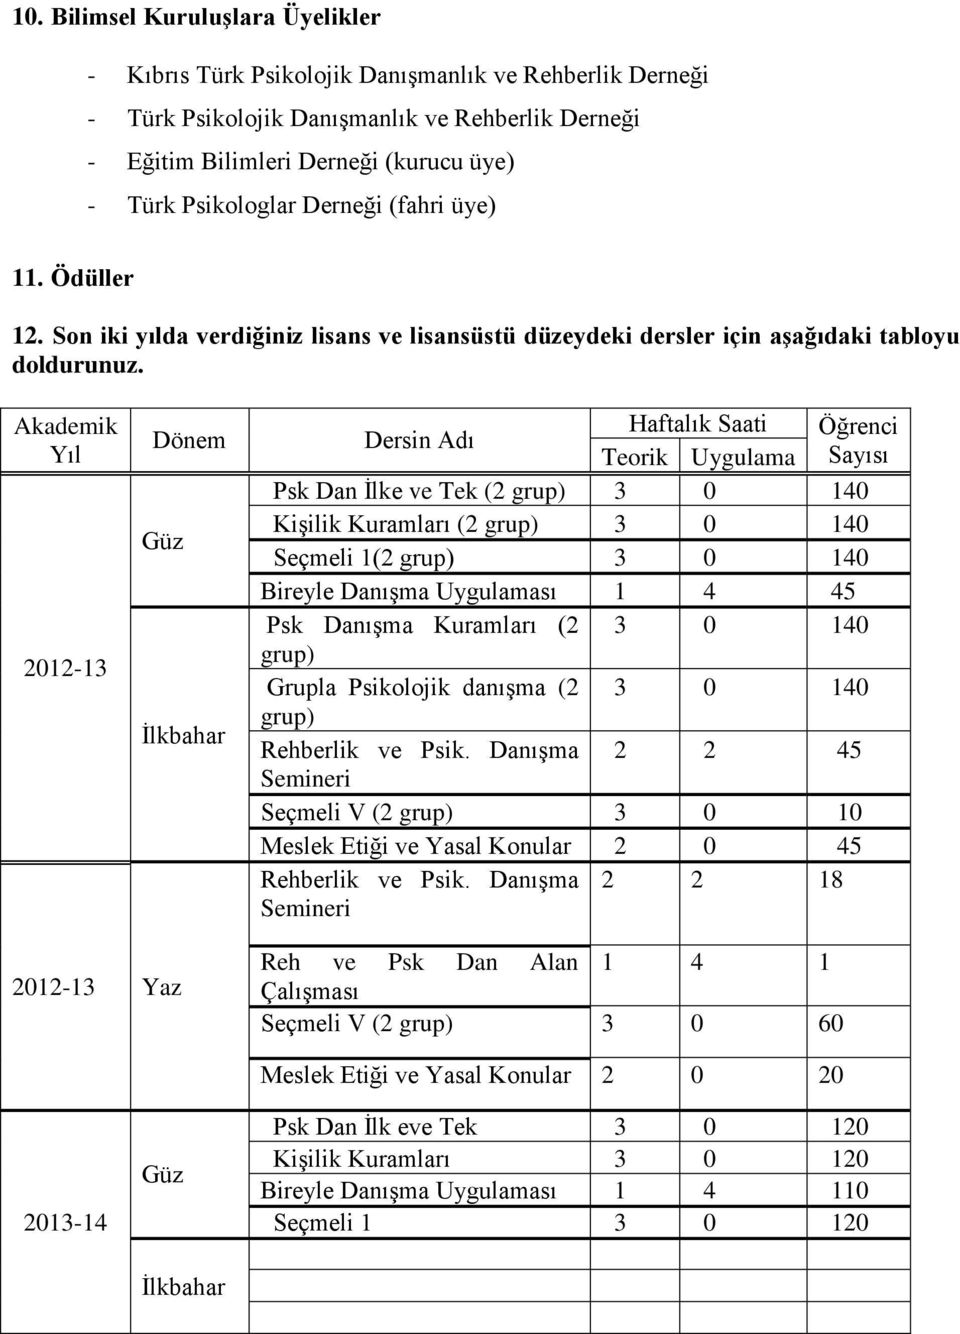 Akademik Yıl 2012-13 Dönem Güz İlkbahar Dersin Adı Haftalık Saati Öğrenci Teorik Uygulama Sayısı Psk Dan İlke ve Tek (2 grup) 3 0 140 Kişilik Kuramları (2 grup) 3 0 140 Seçmeli 1(2 grup) 3 0 140